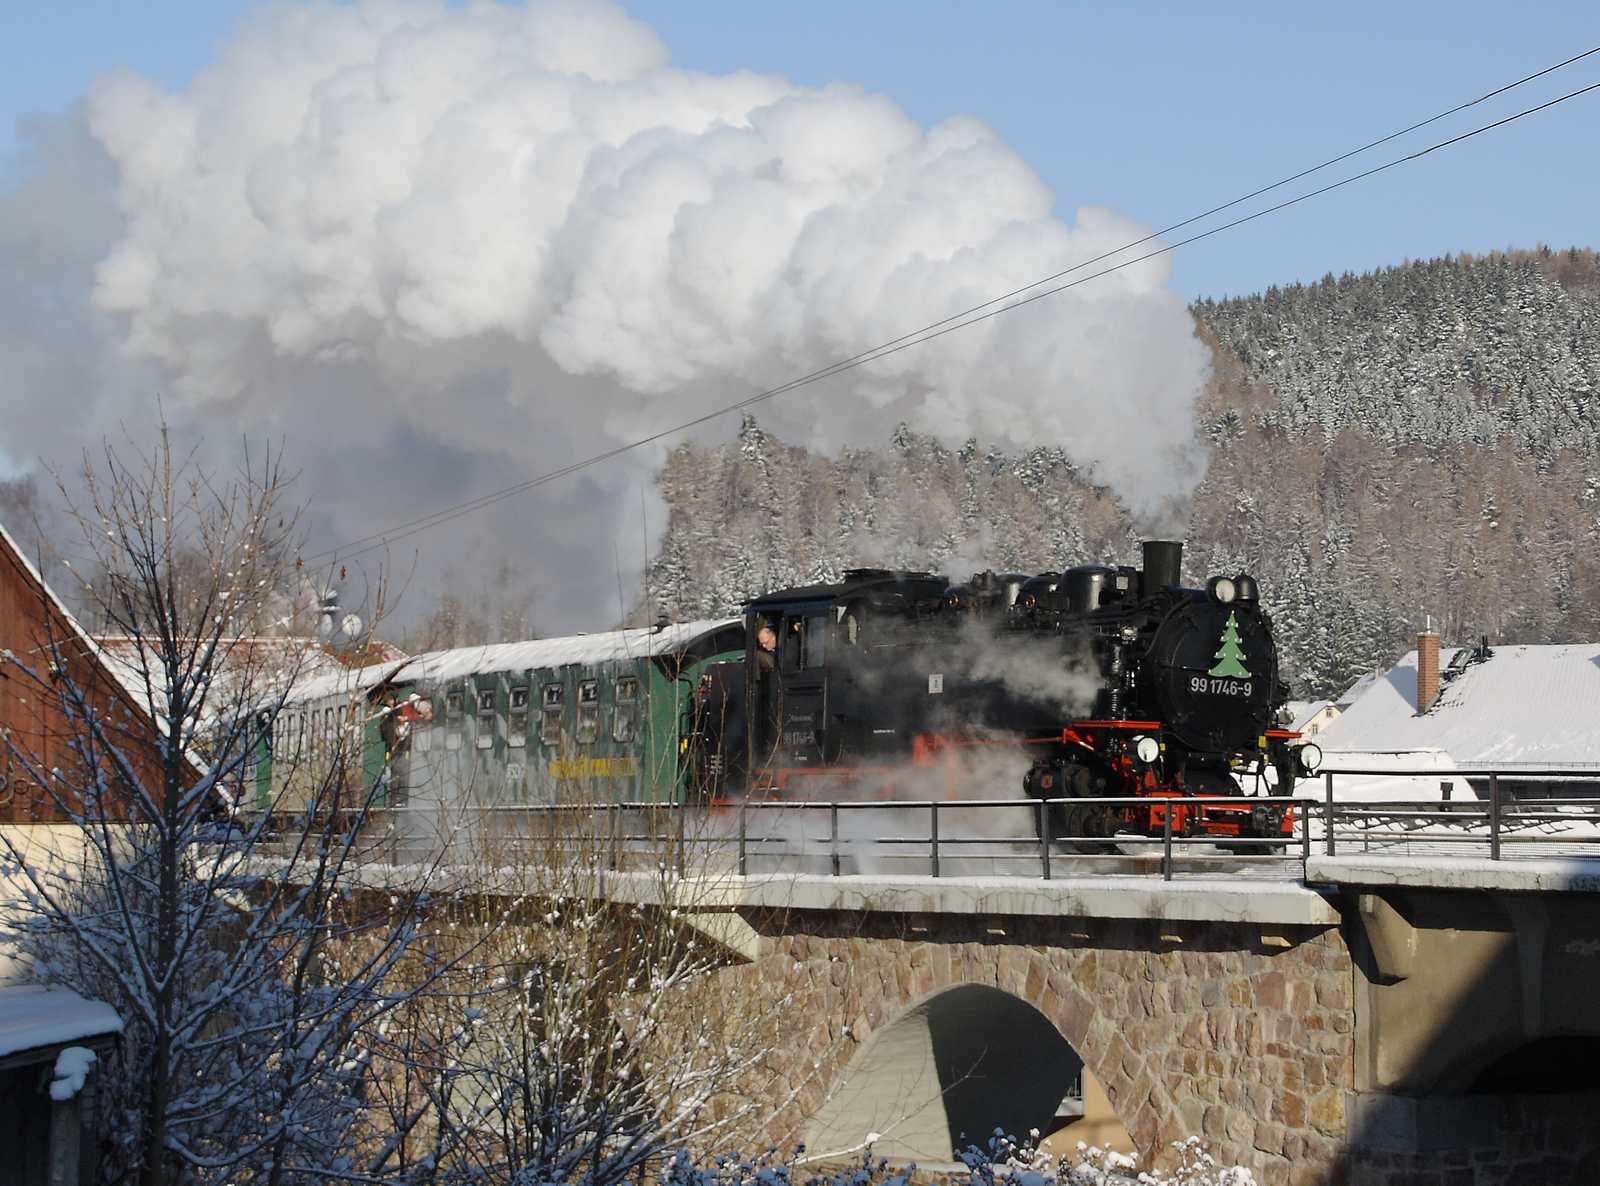 Am 27. und 28. November kam erstmals seit 2002 wieder eine Dampflok auf dem oberen Streckenabschnitt der Weißeritztalbahn zum Einsatz. Daniel Theumer fotografierte den Sonderzug auf dem Schmiedeberger Viadukt.